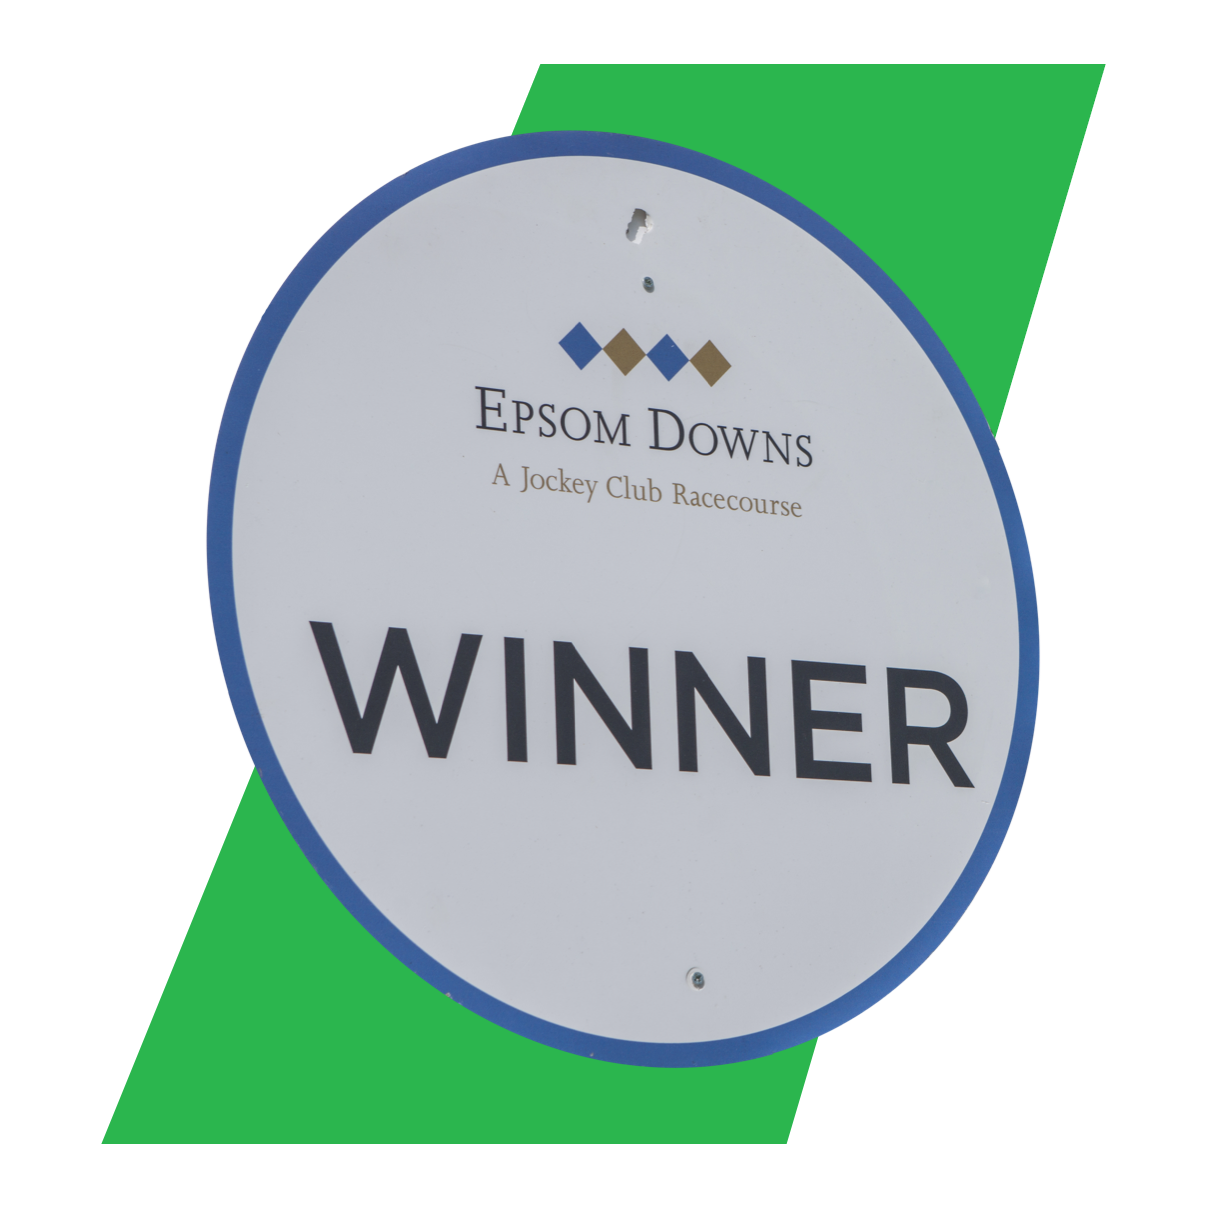 Epsom Derby winner sign